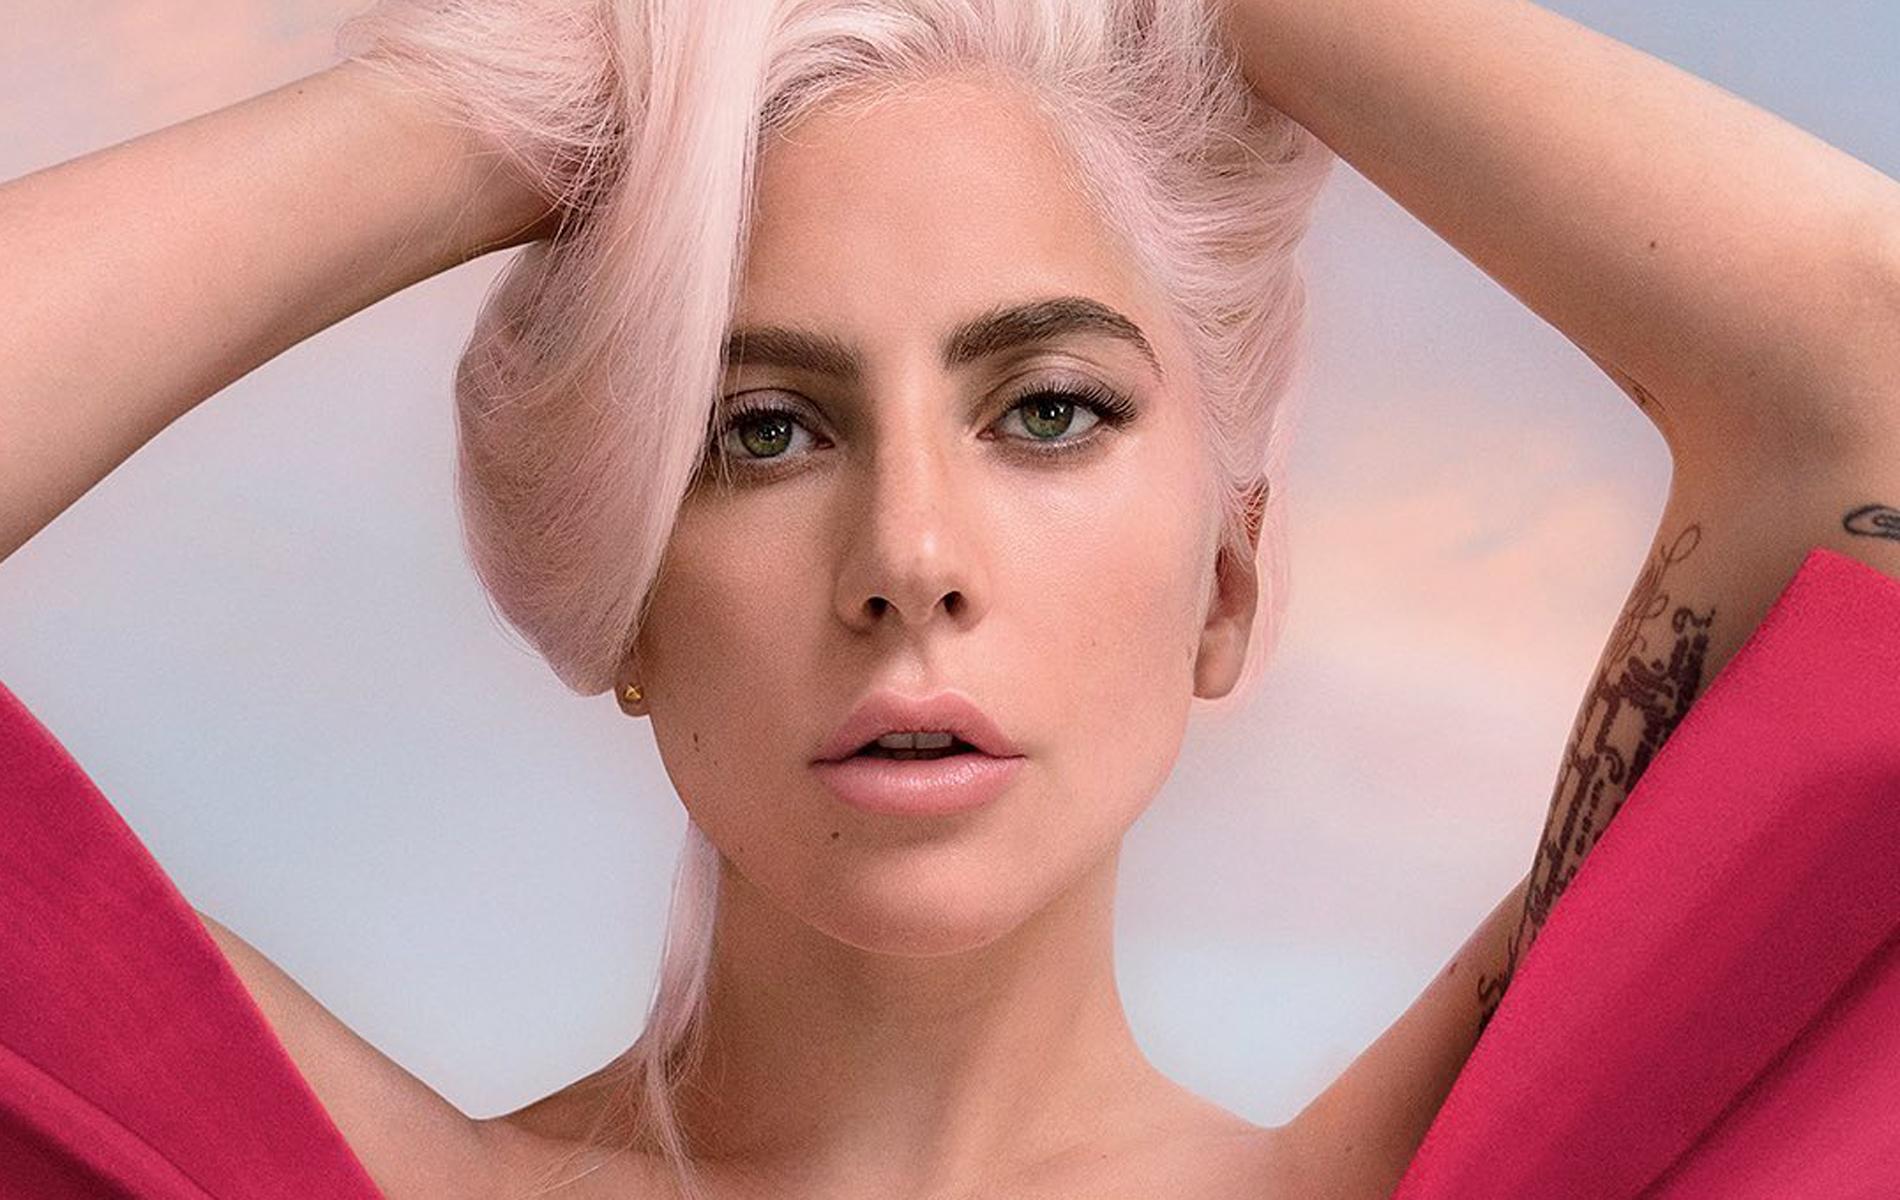 Teint glowy et cheveux pastel : l'autre visage de Lady Gaga pour Valentino  - Madame Figaro